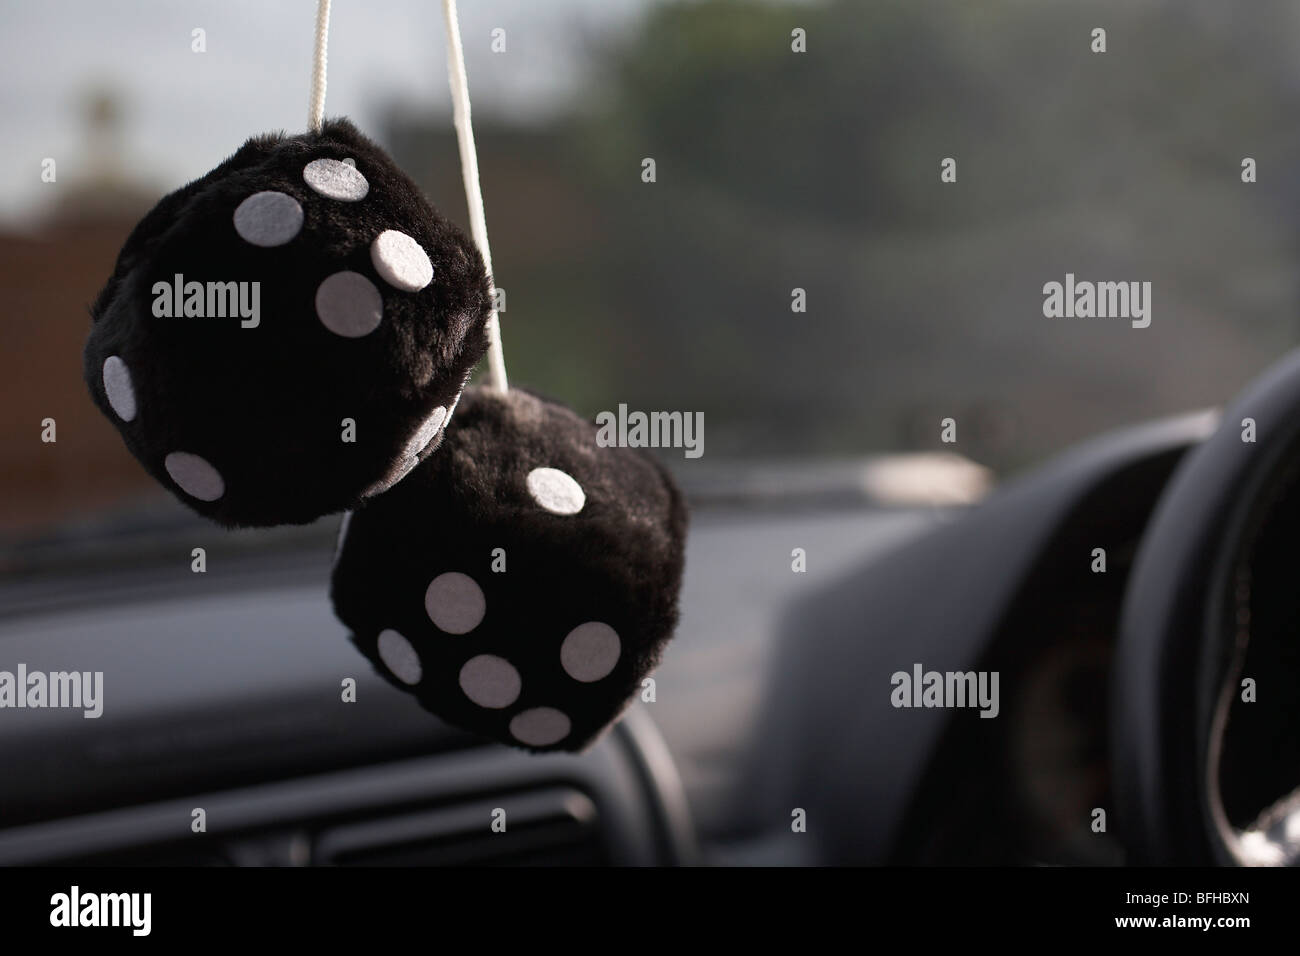 Pelzigen Würfel von den Rückspiegel im Auto hängen Stockfotografie - Alamy